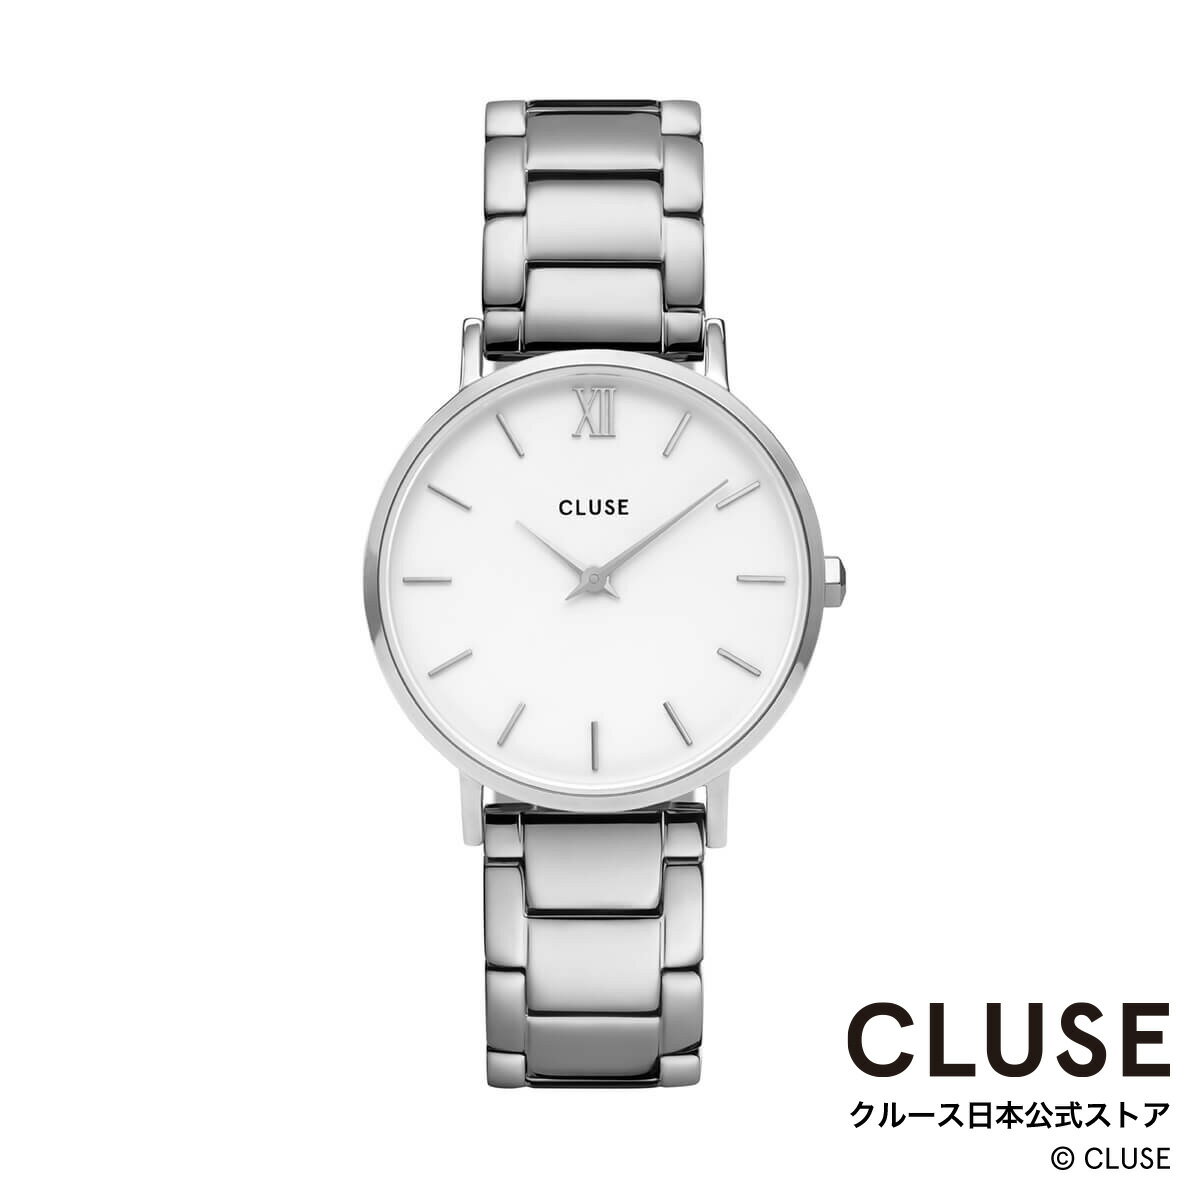 クルース ビジネス腕時計 レディース クルース CLUSE 日本公式ストア ミニュイ 3リンク シルバー ホワイト シルバー レディース 女性 腕時計 時計 防水 クォーツ